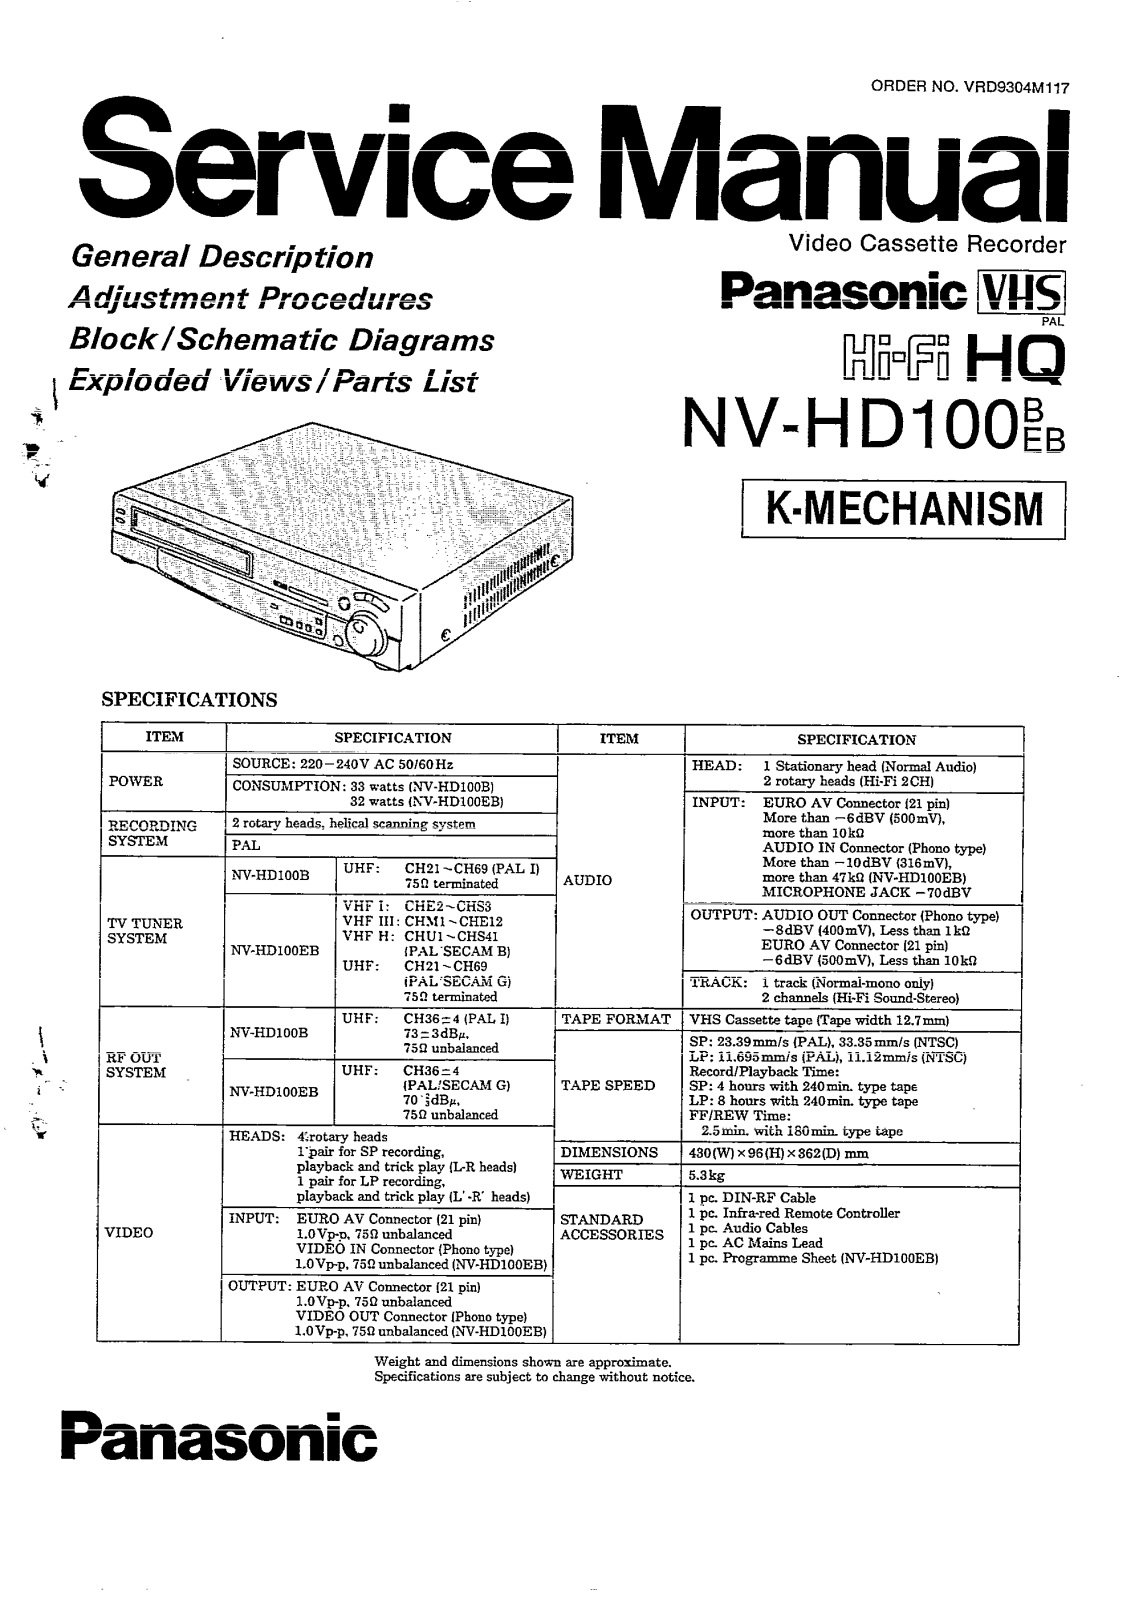 Panasonic NV-HD100 Service Manual